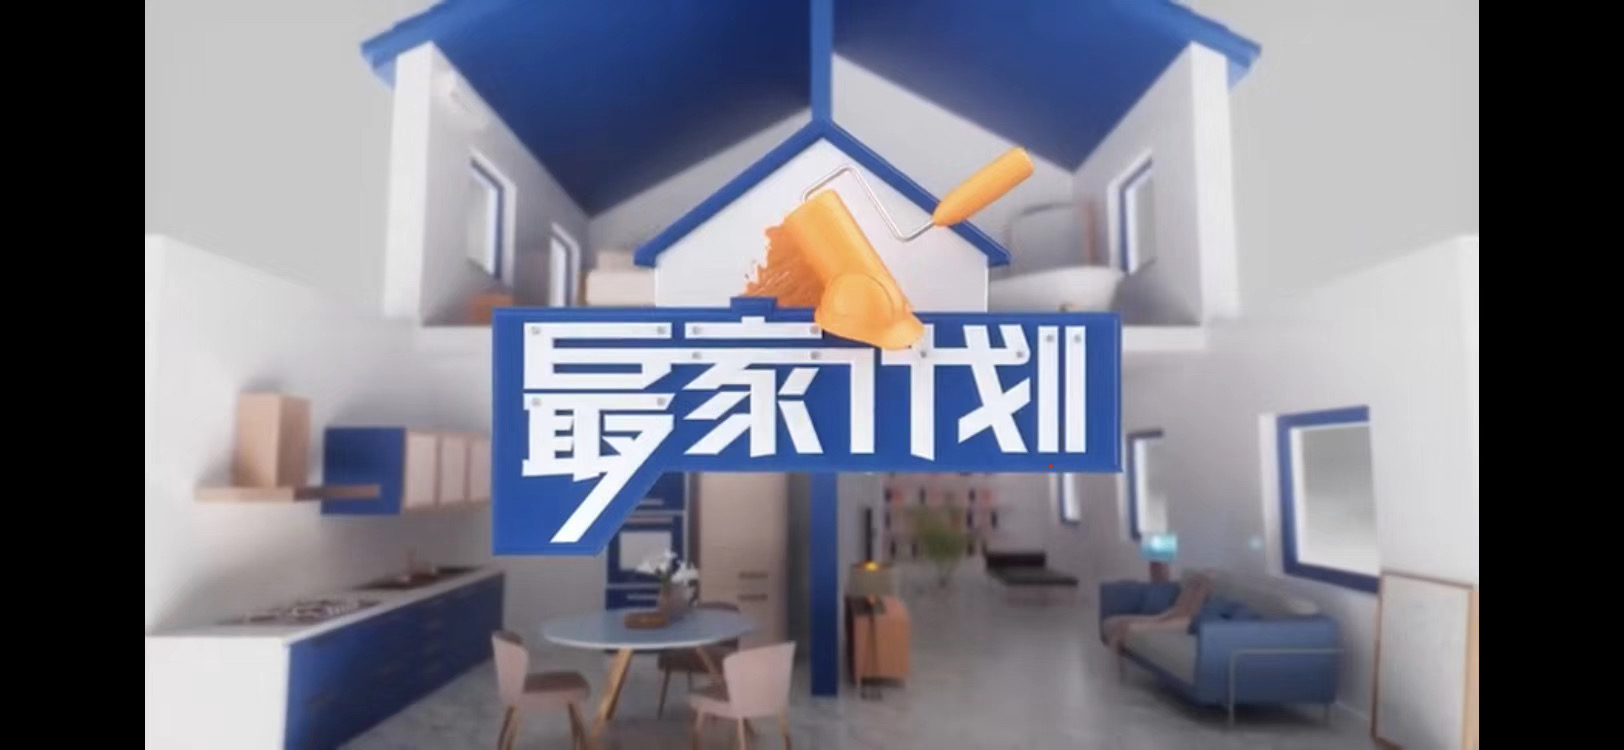 上海电视台财经频道《最家计划》第一季